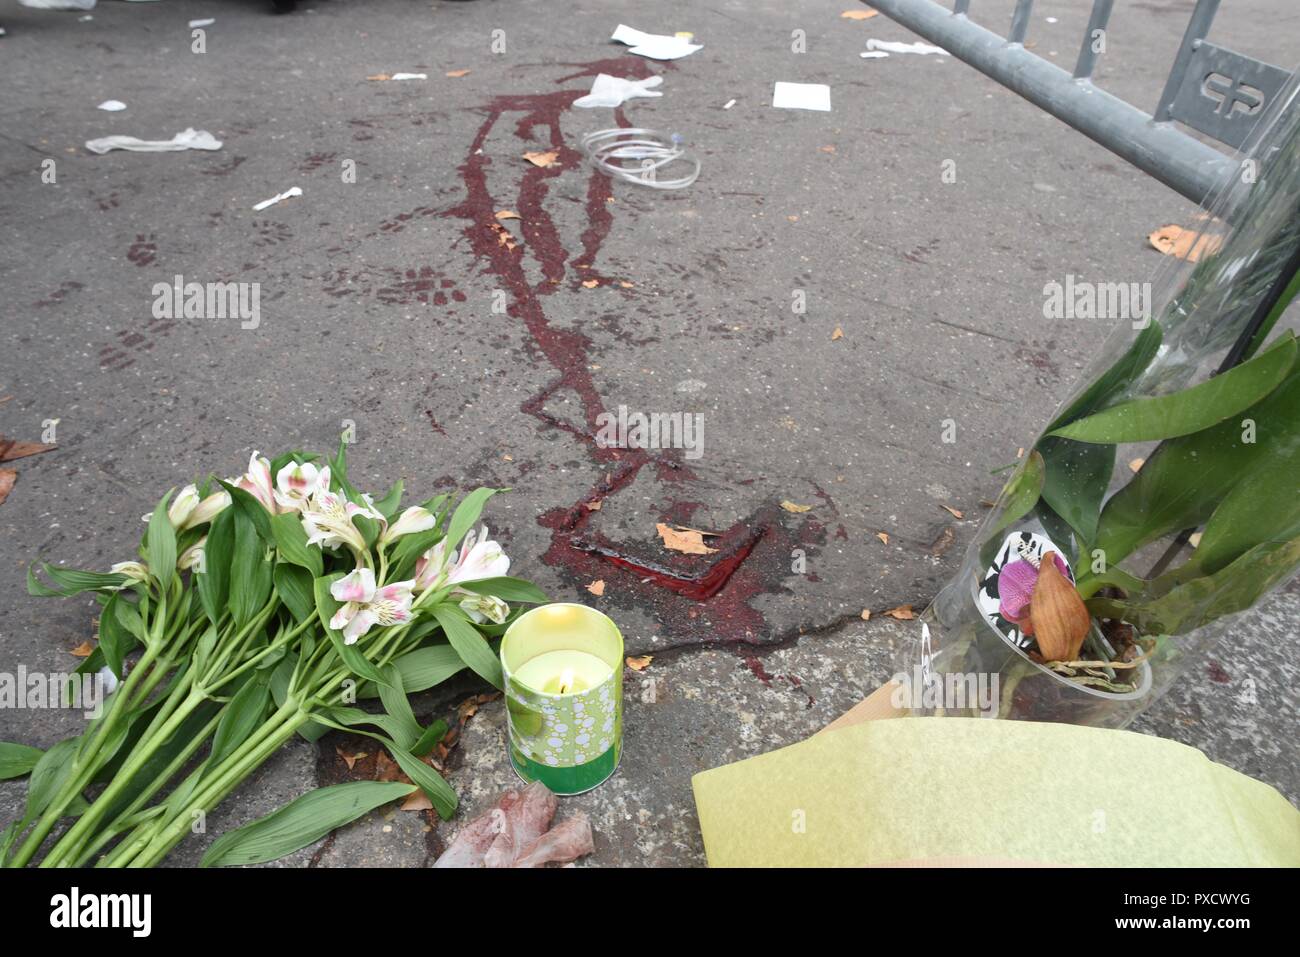 Novembre 14, 2015 - Paris, France : les éclaboussures de sang et de fleurs près du Bataclan concert hall, où des dizaines de personnes ont été tués au cours de la pire attaque terroriste de frapper Paris. Des traces de sang sont visibles sur le sol pres du Bataclan, au lendemain des tueries du 13 novembre 2015, dans lesquelles 130 personnes ont ete tuees par des terroristes djihadistes. *** FRANCE / PAS DE VENTES DE MÉDIAS FRANÇAIS *** Banque D'Images